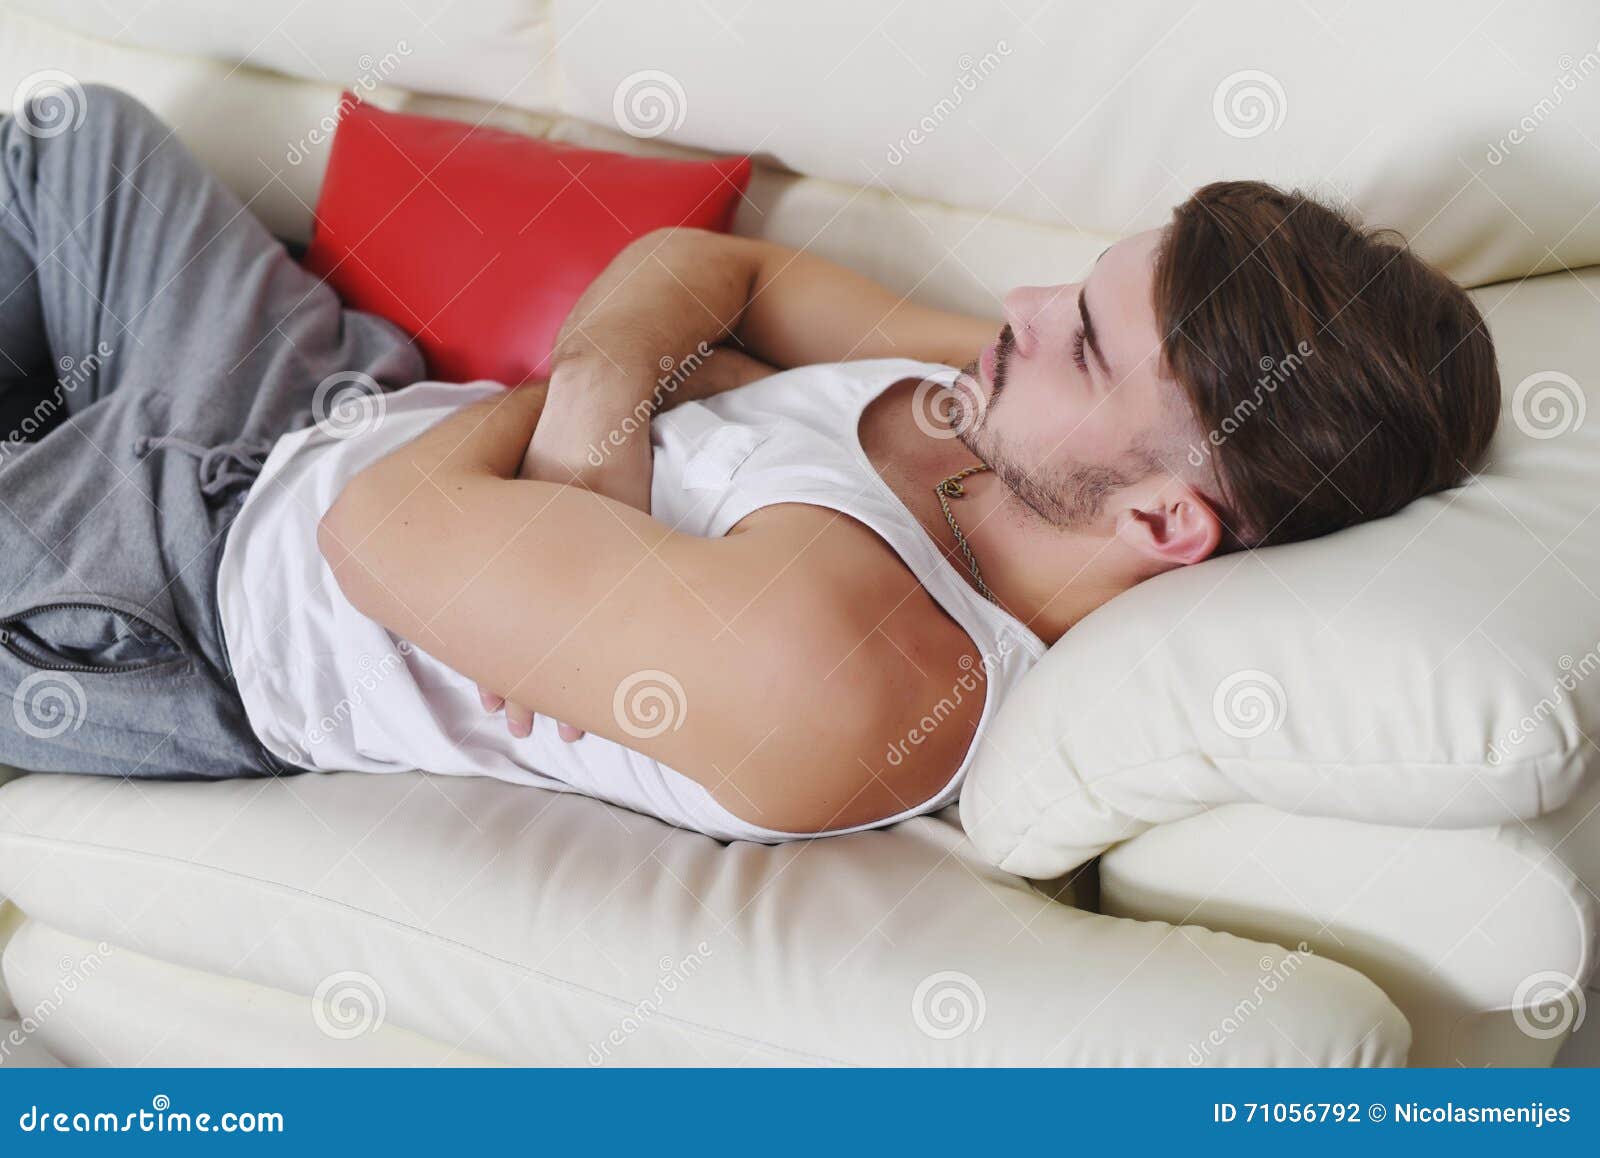 Лежит муж русская. Мужчина лежит. Мужчина лежит на спине. Пацан лежит на диване.